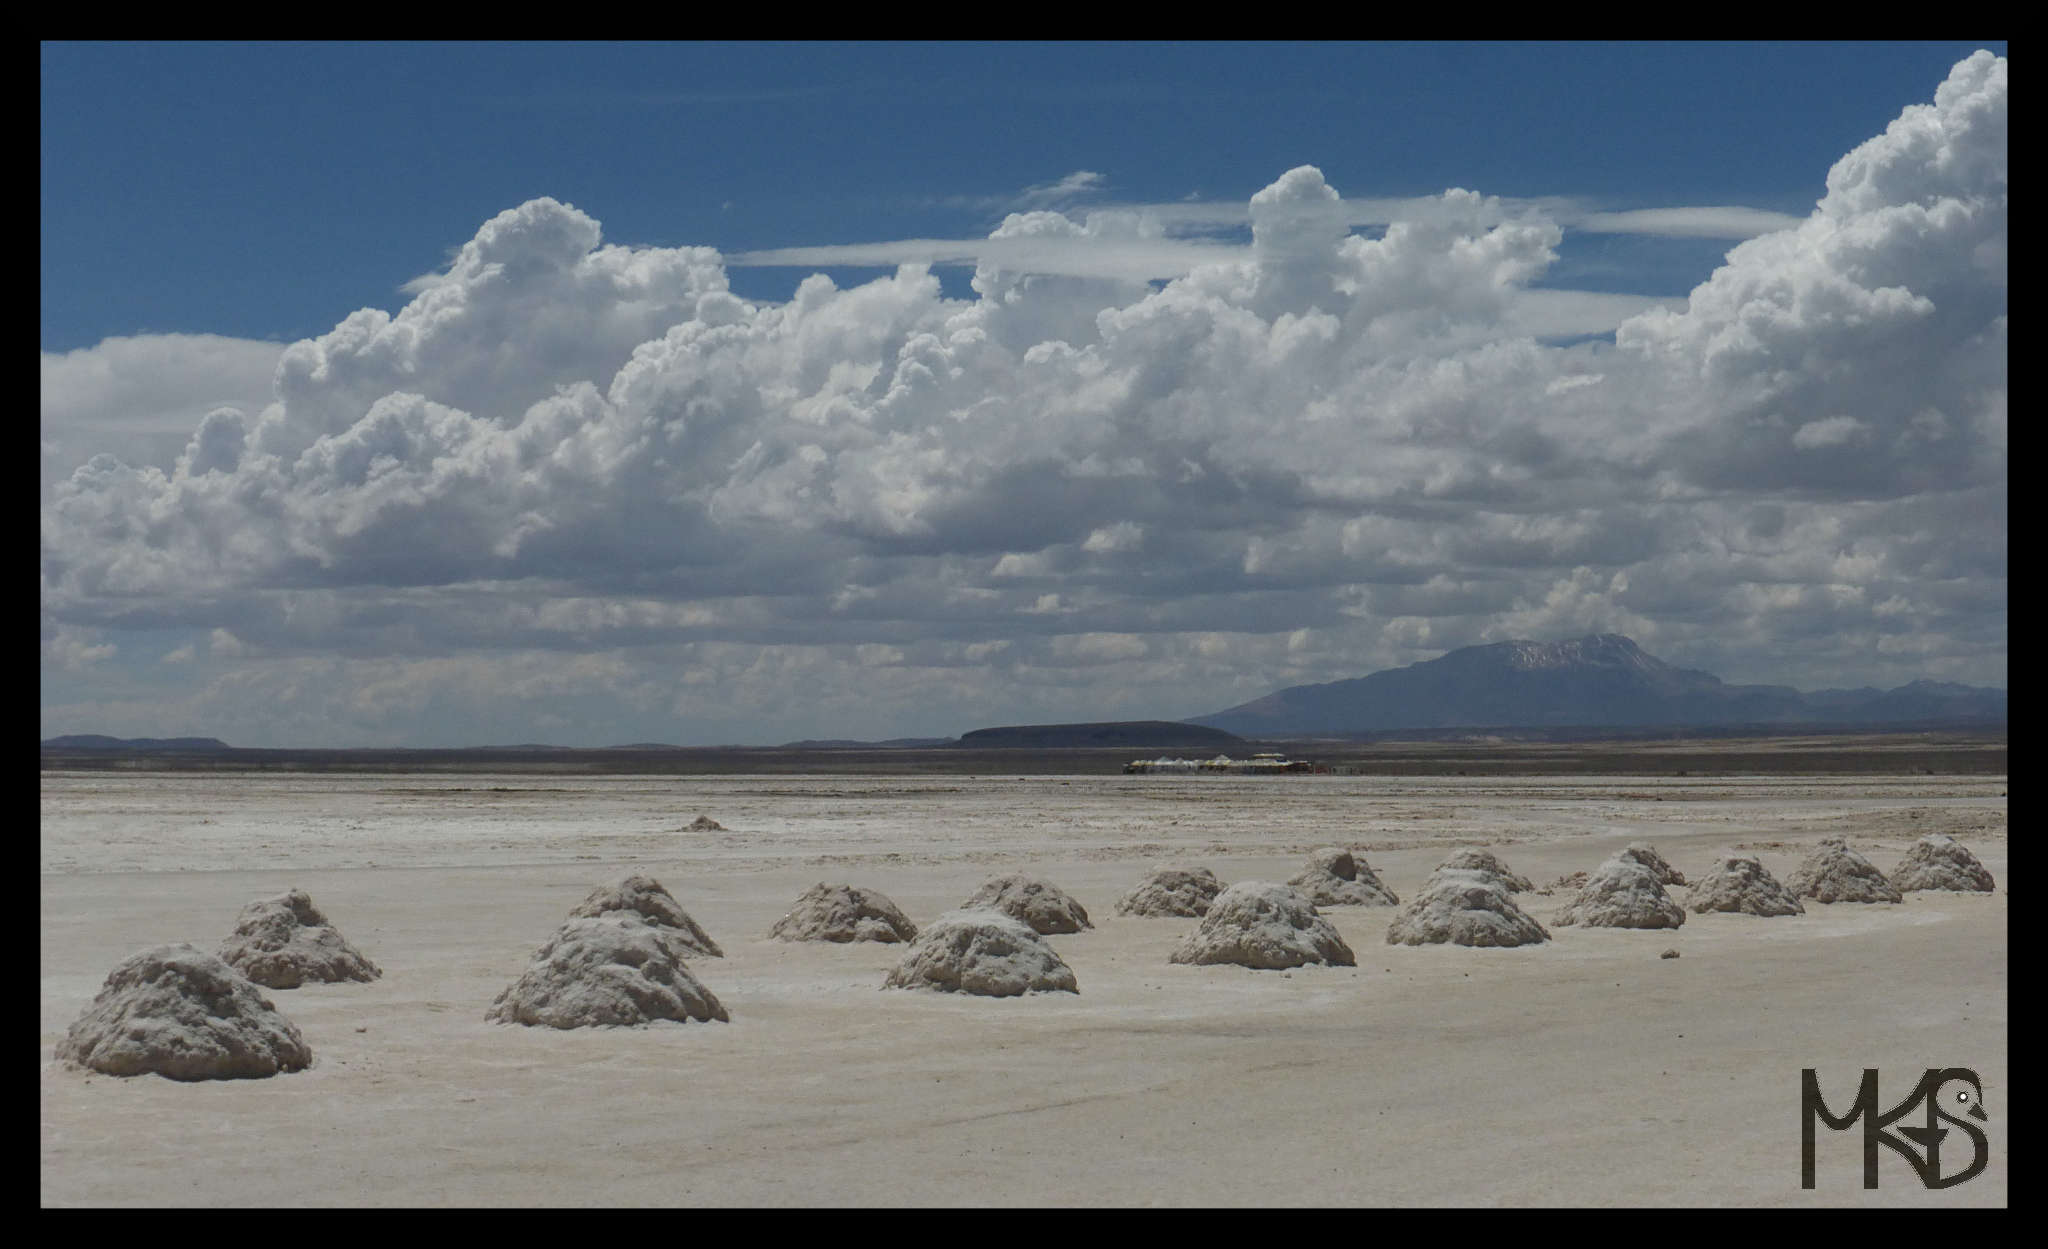 Piles of salt at the Salar de Uyuni, Bolivia